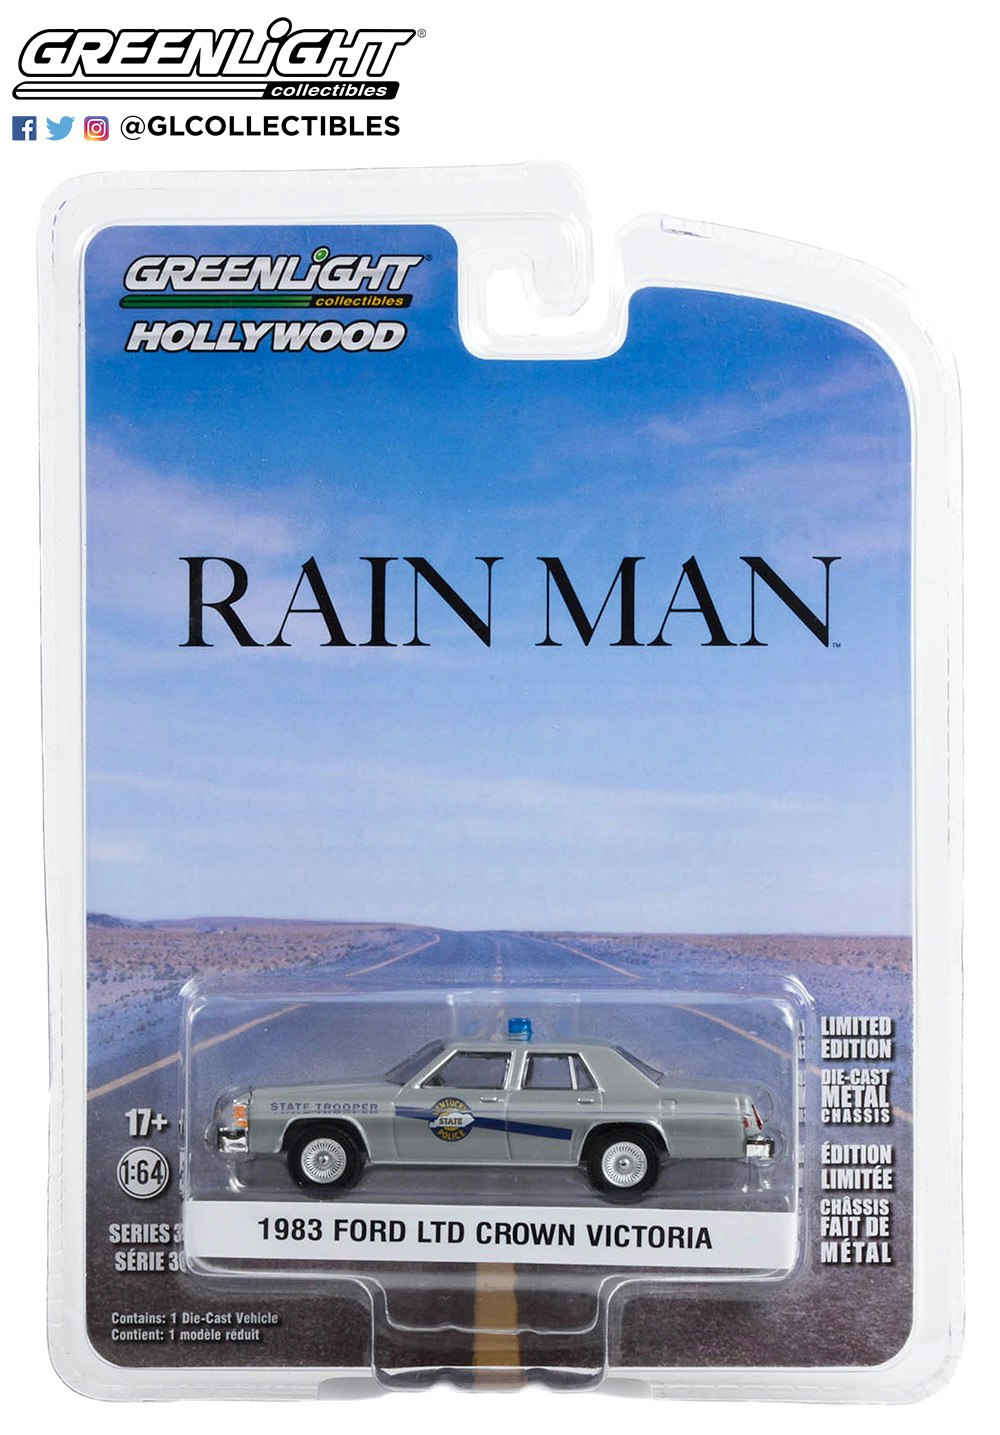 Skala 1/64 Ford LTD Crown Victoria 83' polisbil "RAIN MAN" från Greenlight Hollywood